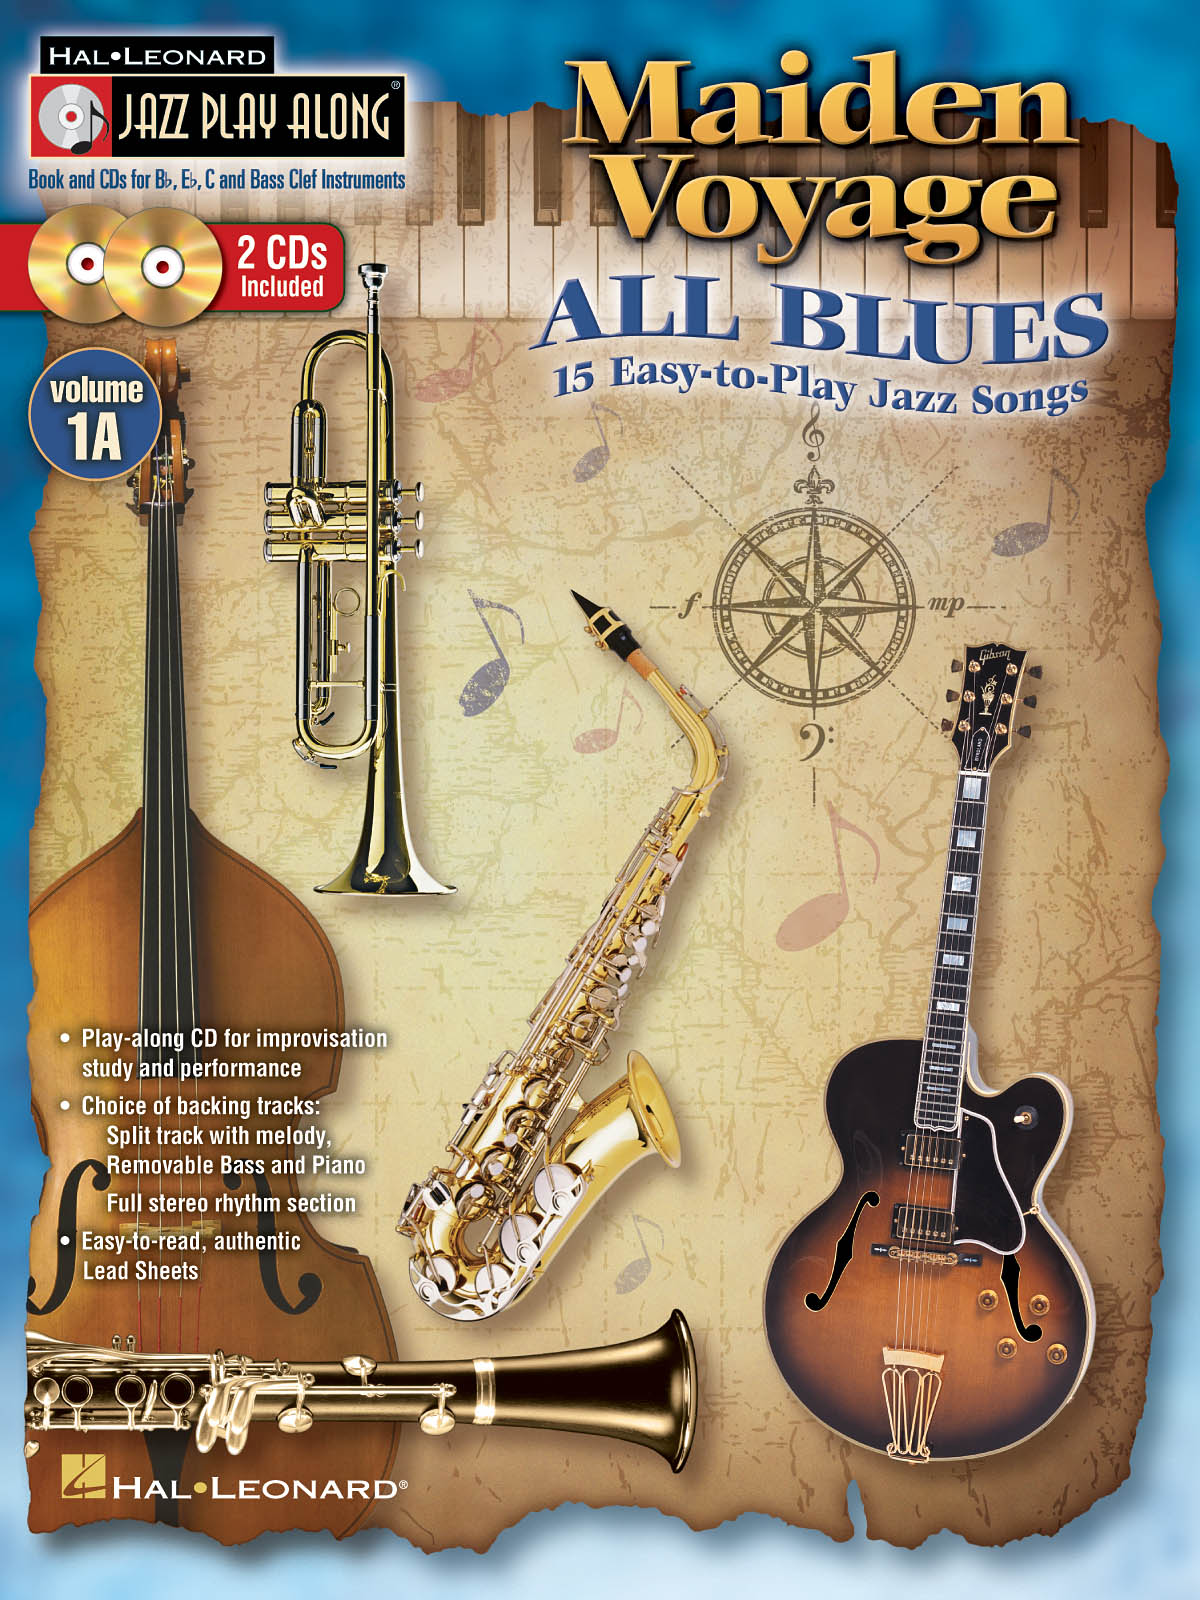 Maiden Voyage/All Blues - Jazz Play-Along Volume 1A - melodie s akordy pro nástroje v ladění C